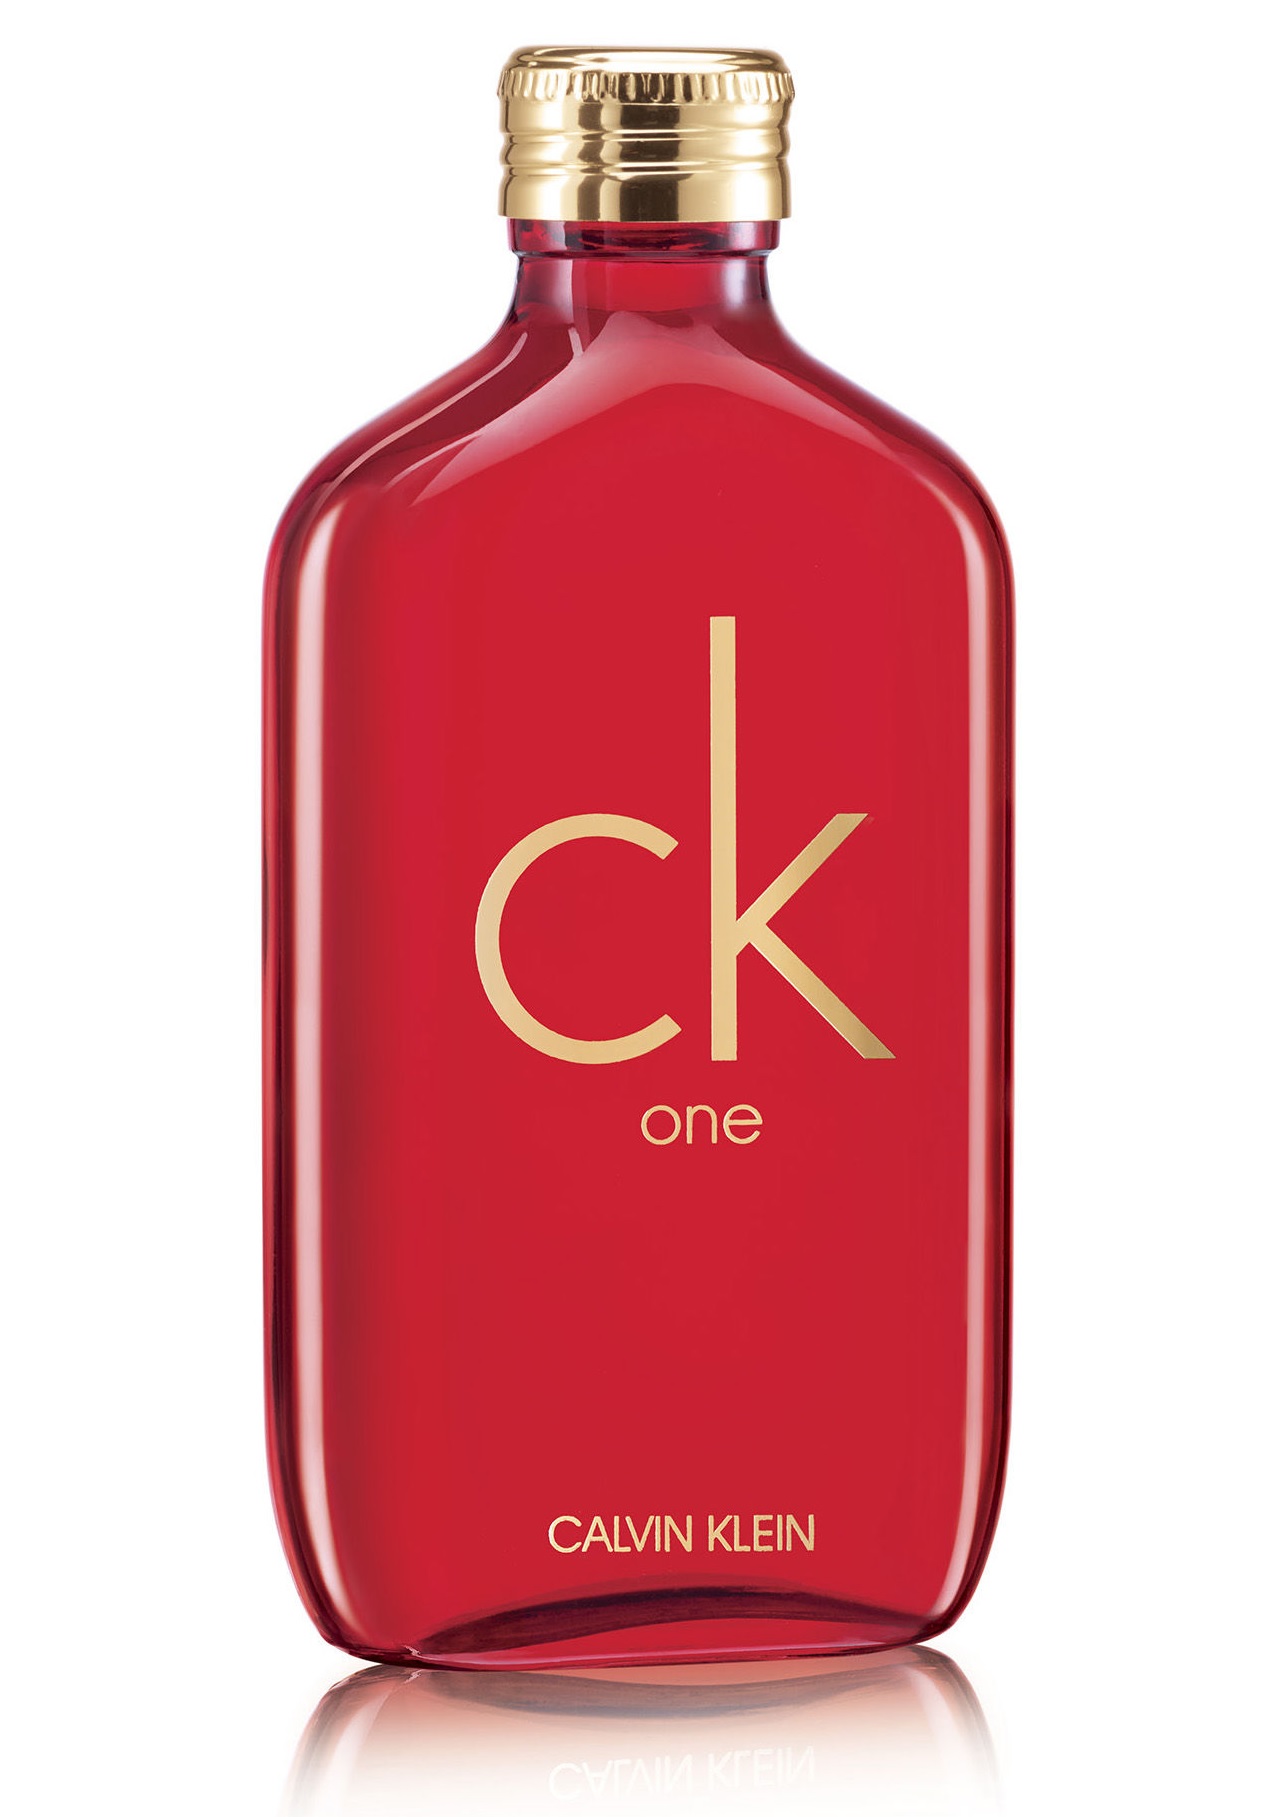 CK ONE 限量版淡香水 - 女士香水 | 金英化妆药房